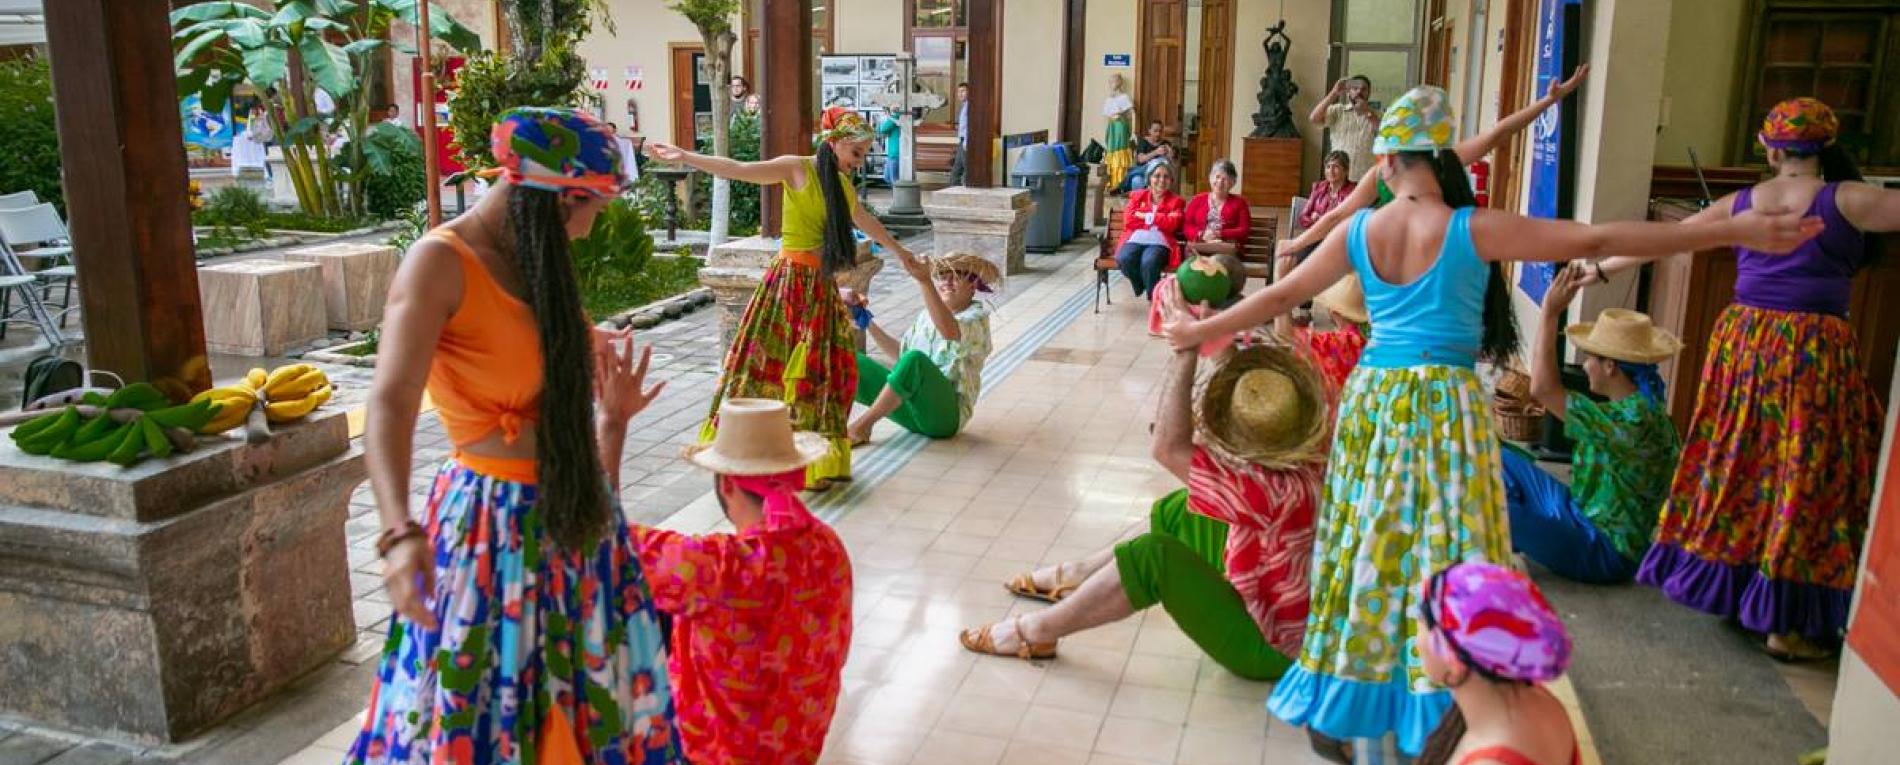 Bailes Folklóricos Sörbö cumple 40 años de rescatar la idiosincrasia de cada región del país